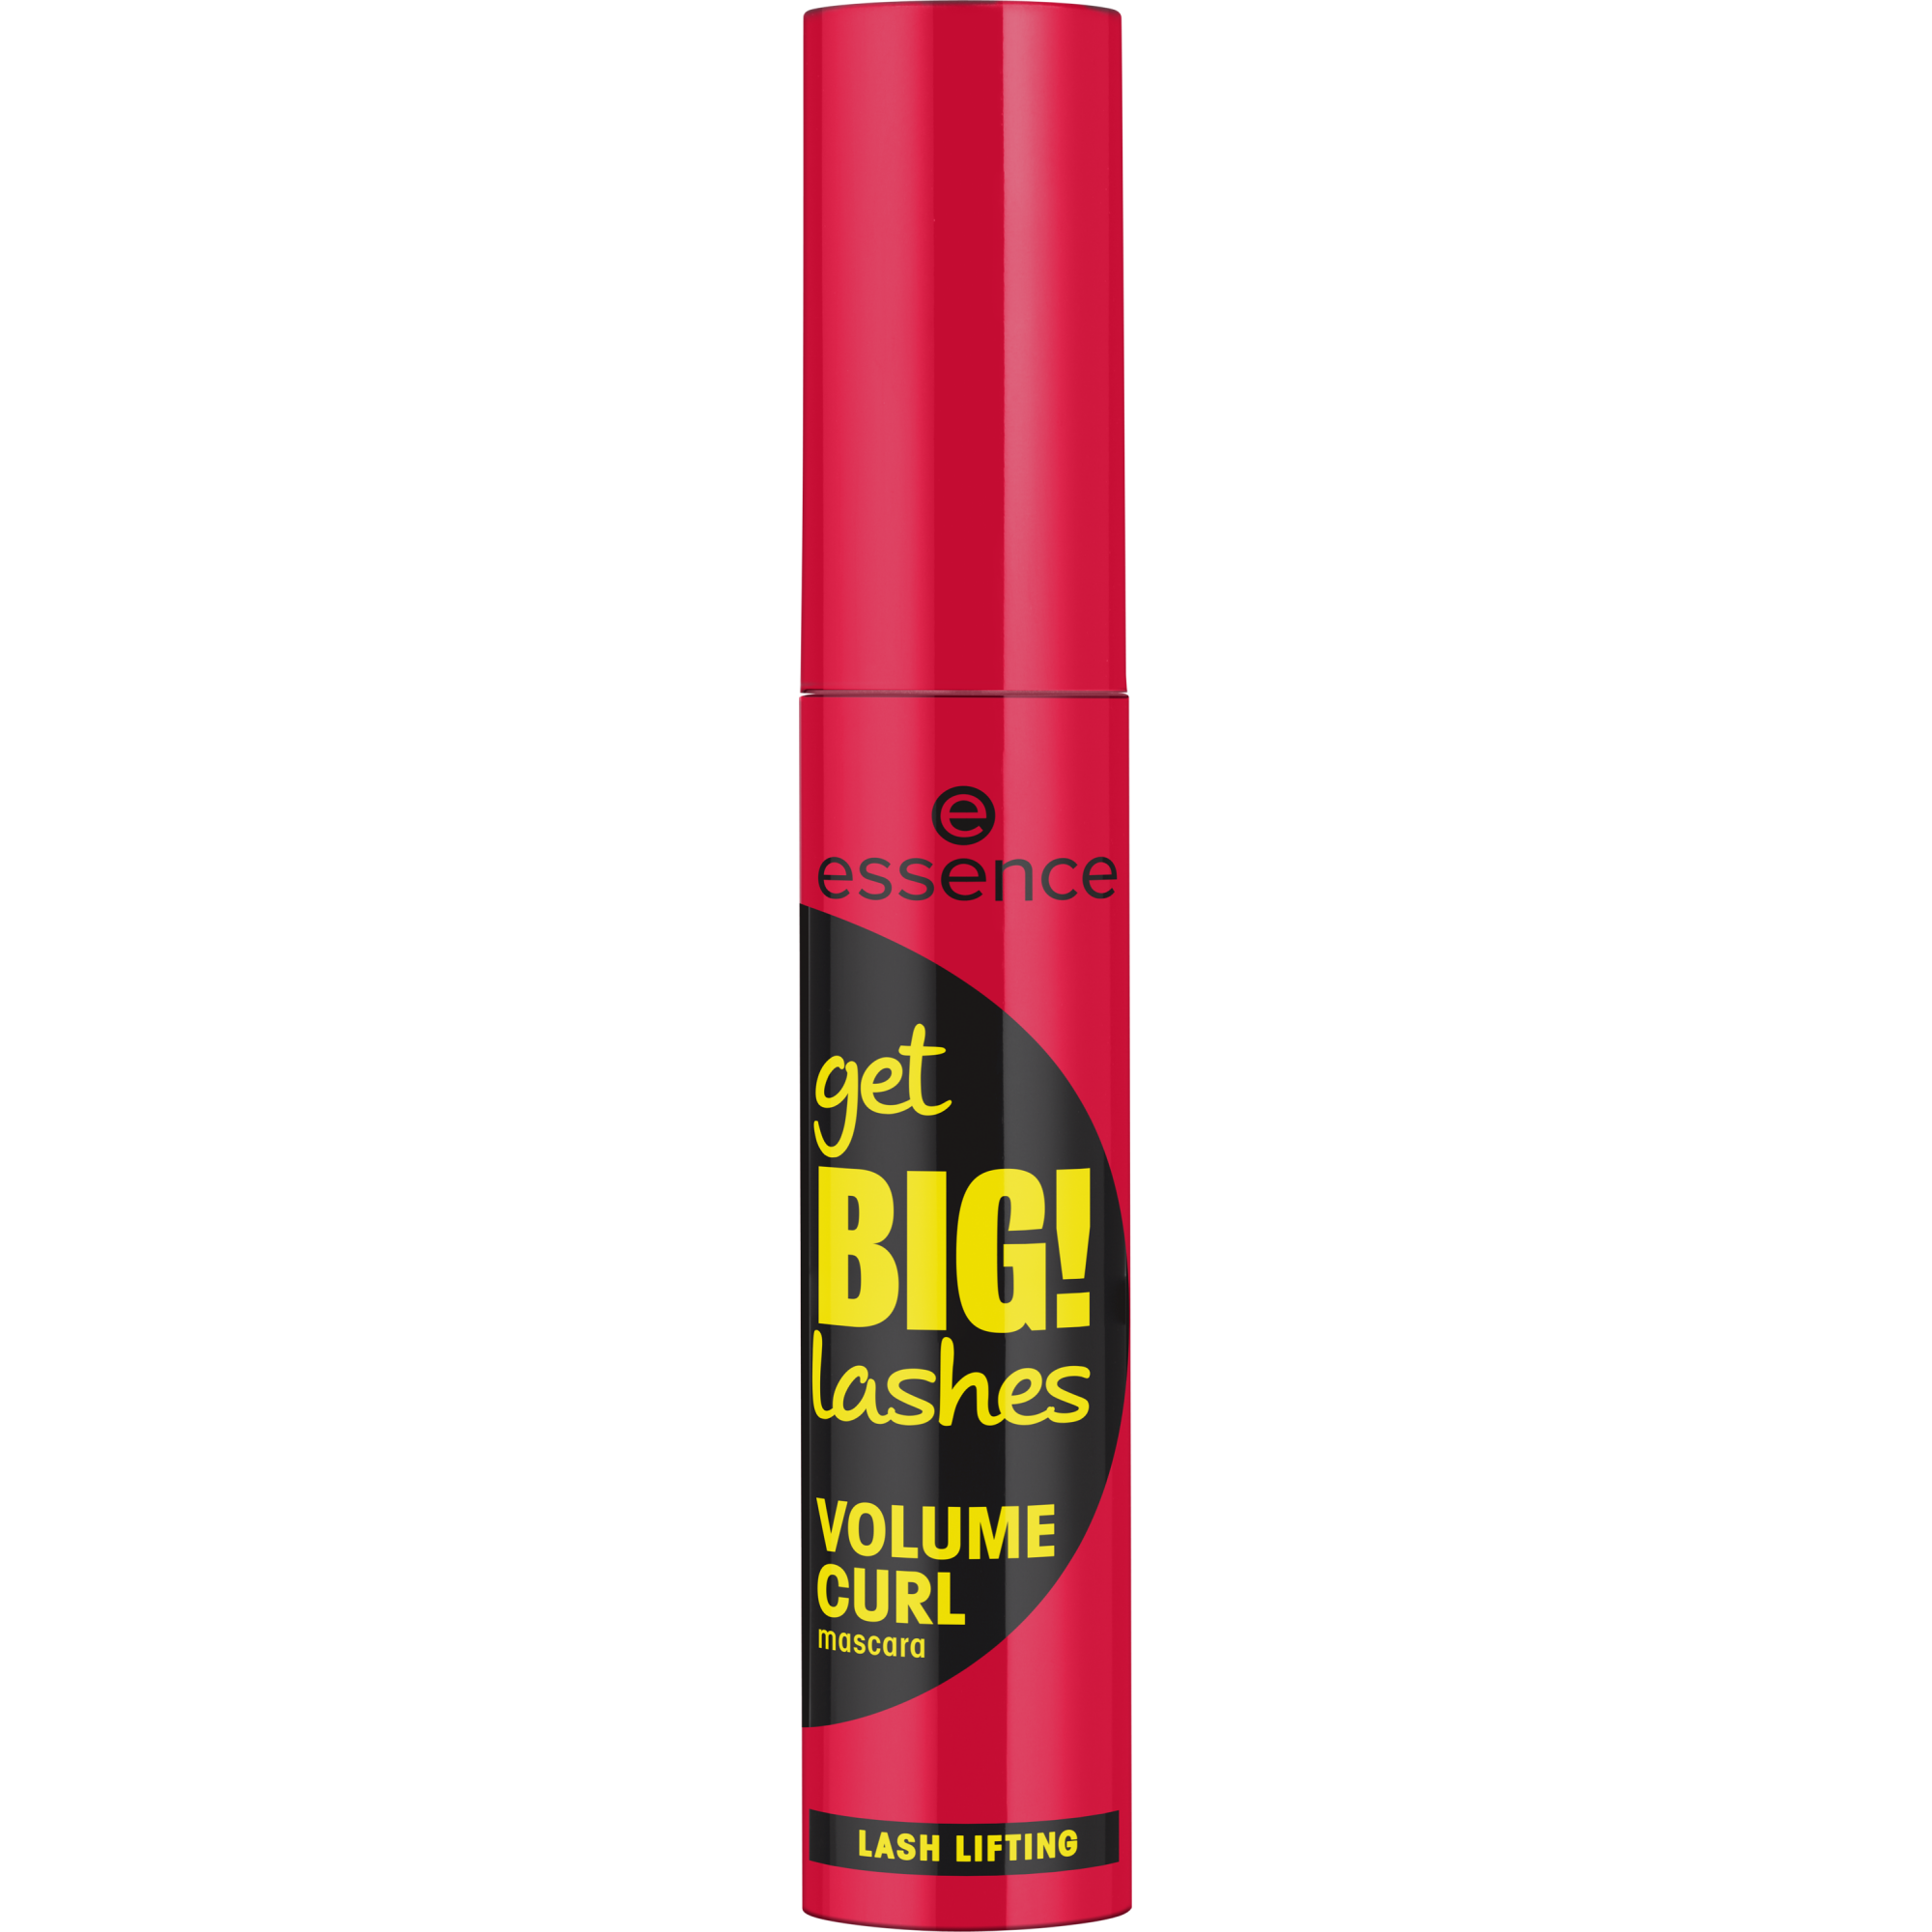 get BIG! lashes VOLUME CURL mascara volume et courbure